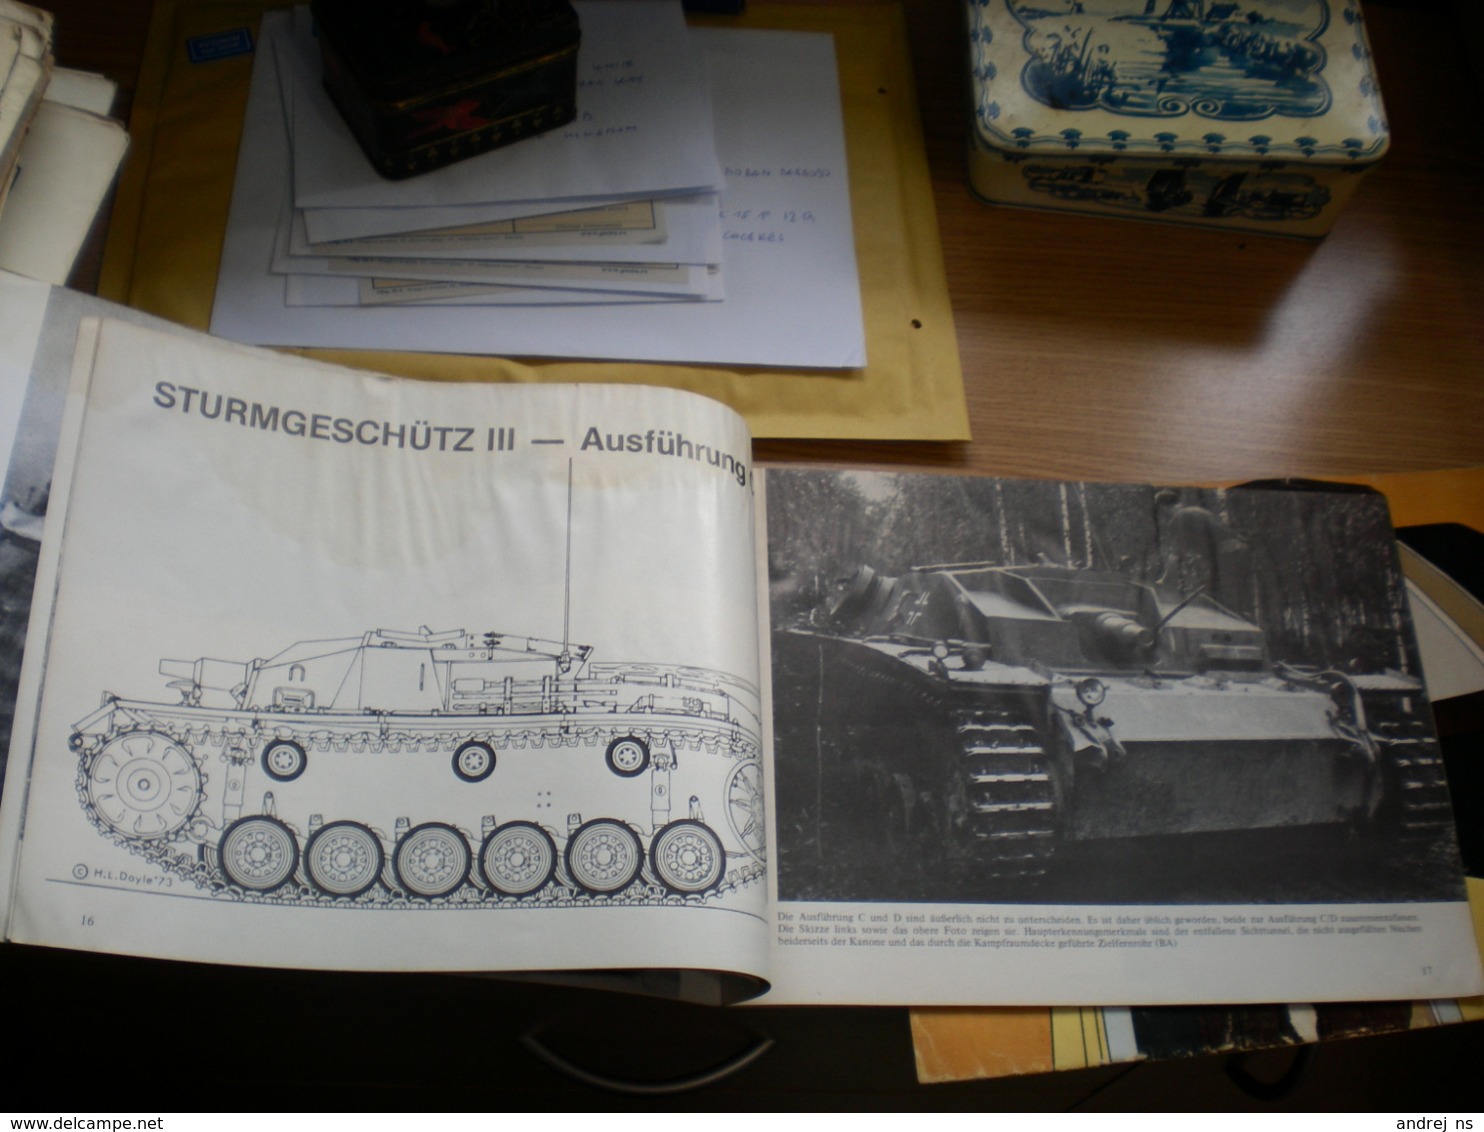 Tank Sturmgeschutz III L 24 Und L 33 Der Panzer Der Infanterie Waffen Arsenal 48 Pages - Deutschland